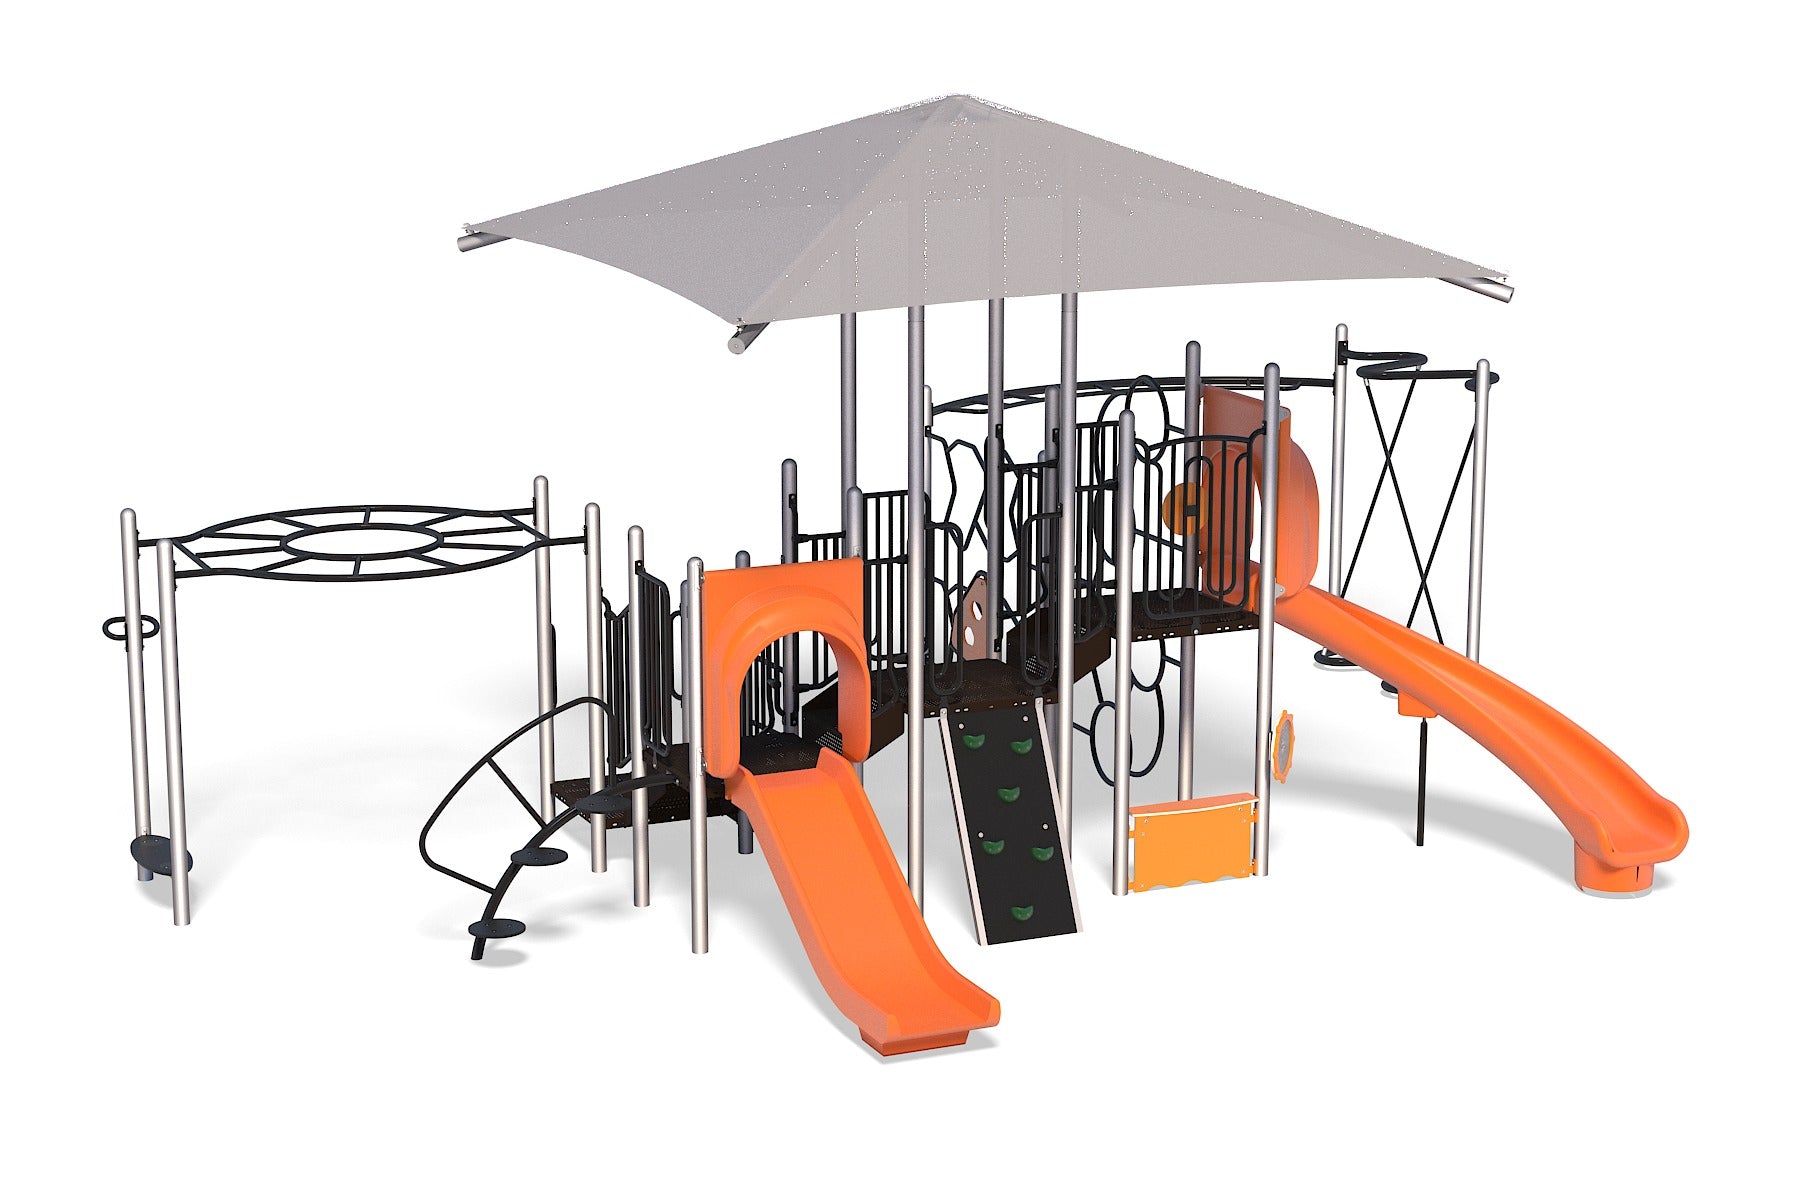 Extra Safe Kids Seesaw 360 Degree Playground Yard Metal Toys Game